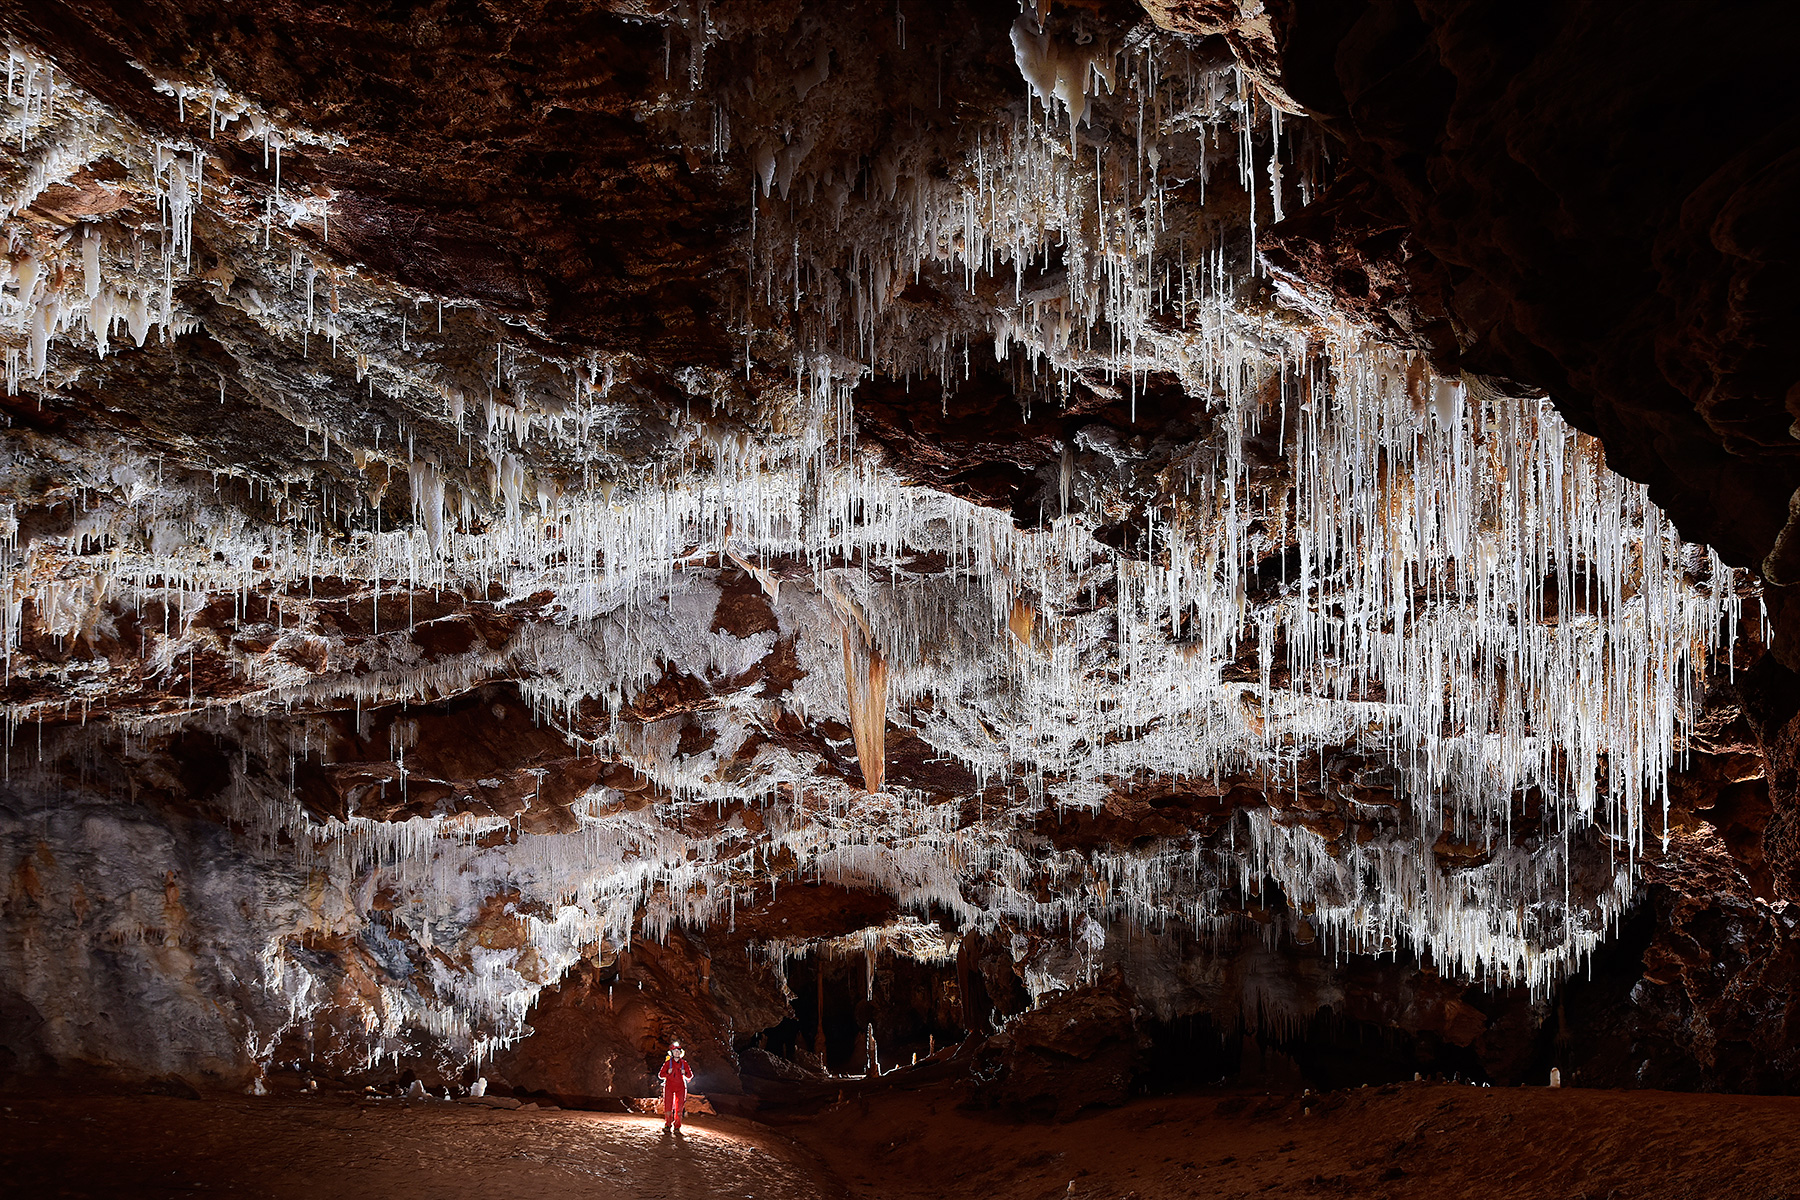 Grotte de Clamouse - Grande galerie avec remplissages argileux rouges et concrétions blanches au plafond (spéléo contre-jour)